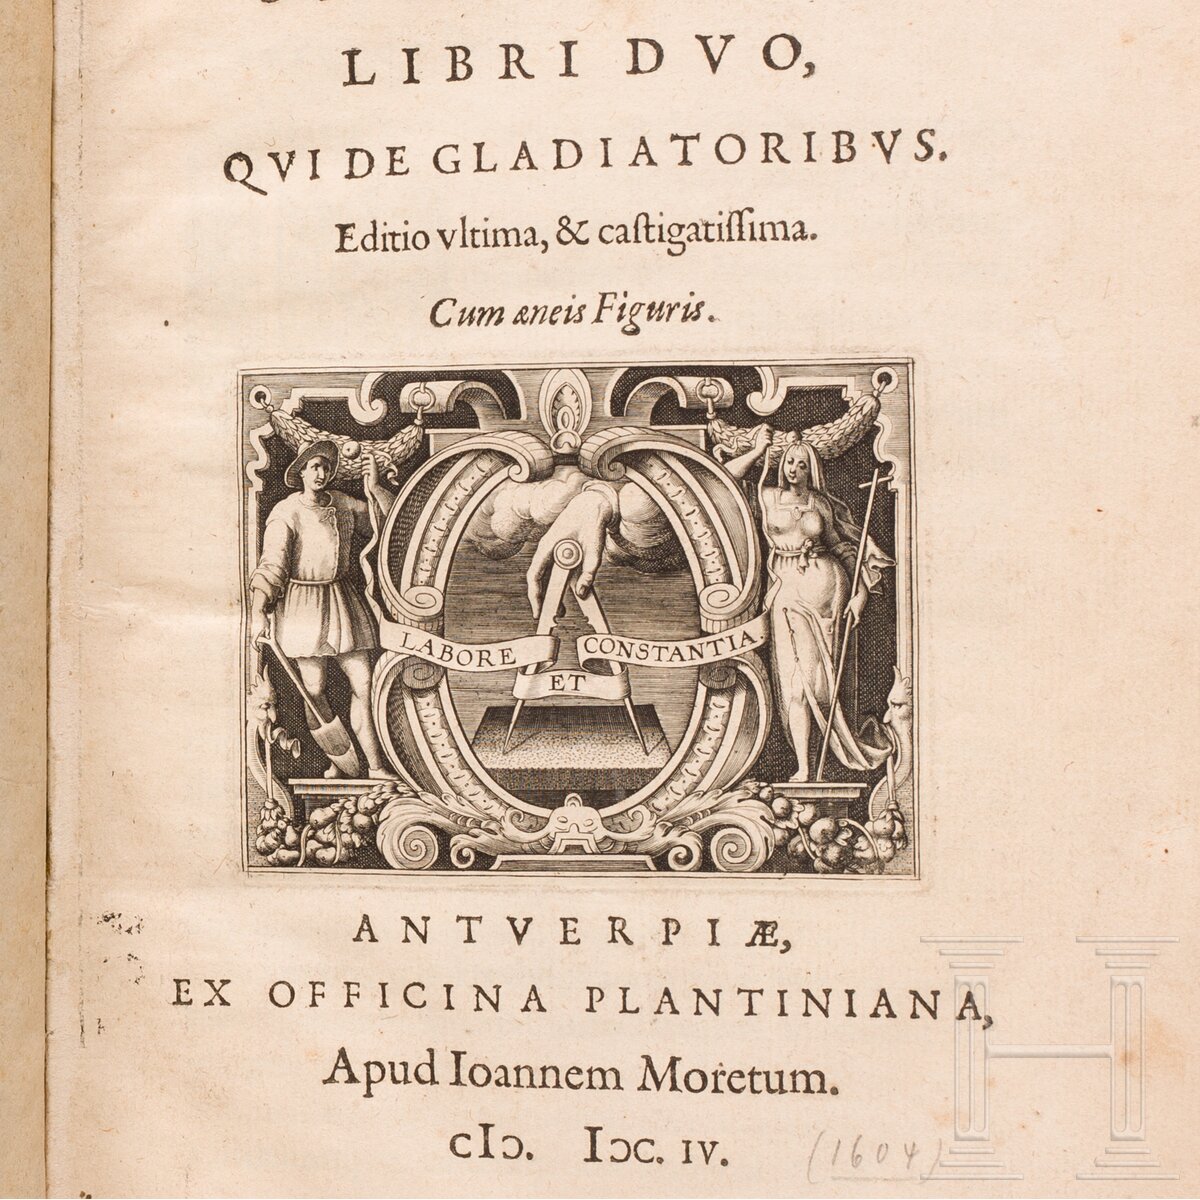 Iustus Lipsius, "Saturnalium Sermonum Libri Duo, Qui de Gladiatoribus", Antwerpen, 1604 - Image 5 of 5